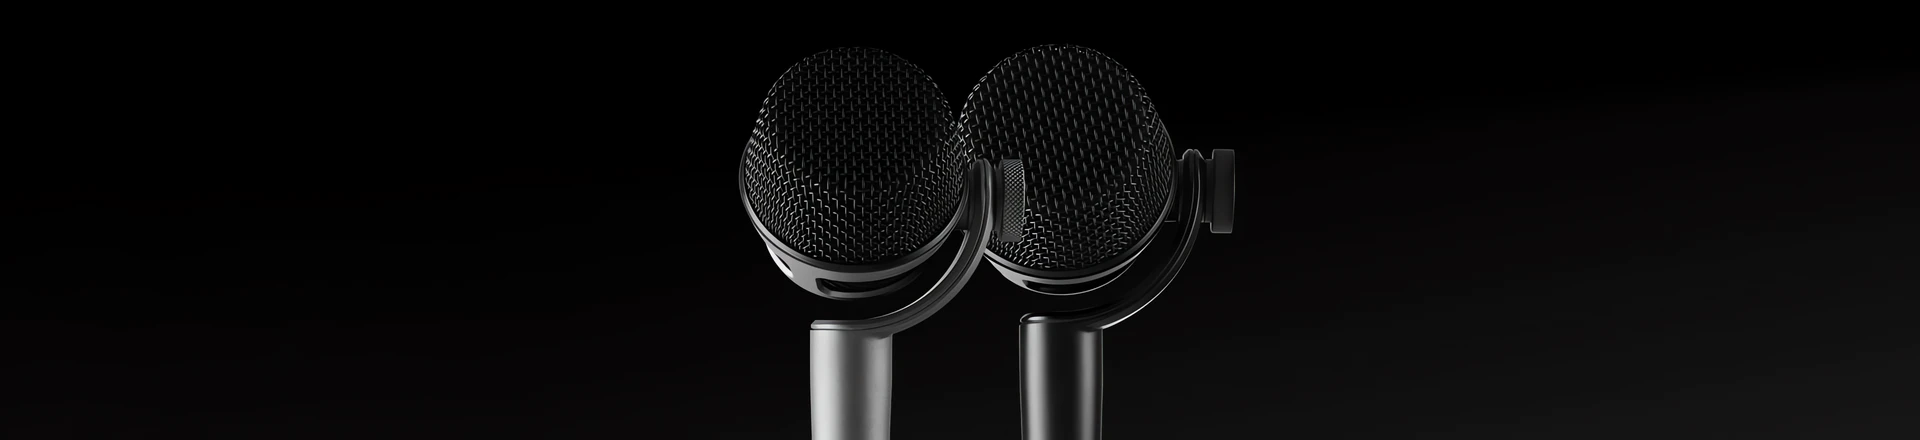 OD5 i OC7 - Innowacyjne mikrofony od Austrian Audio